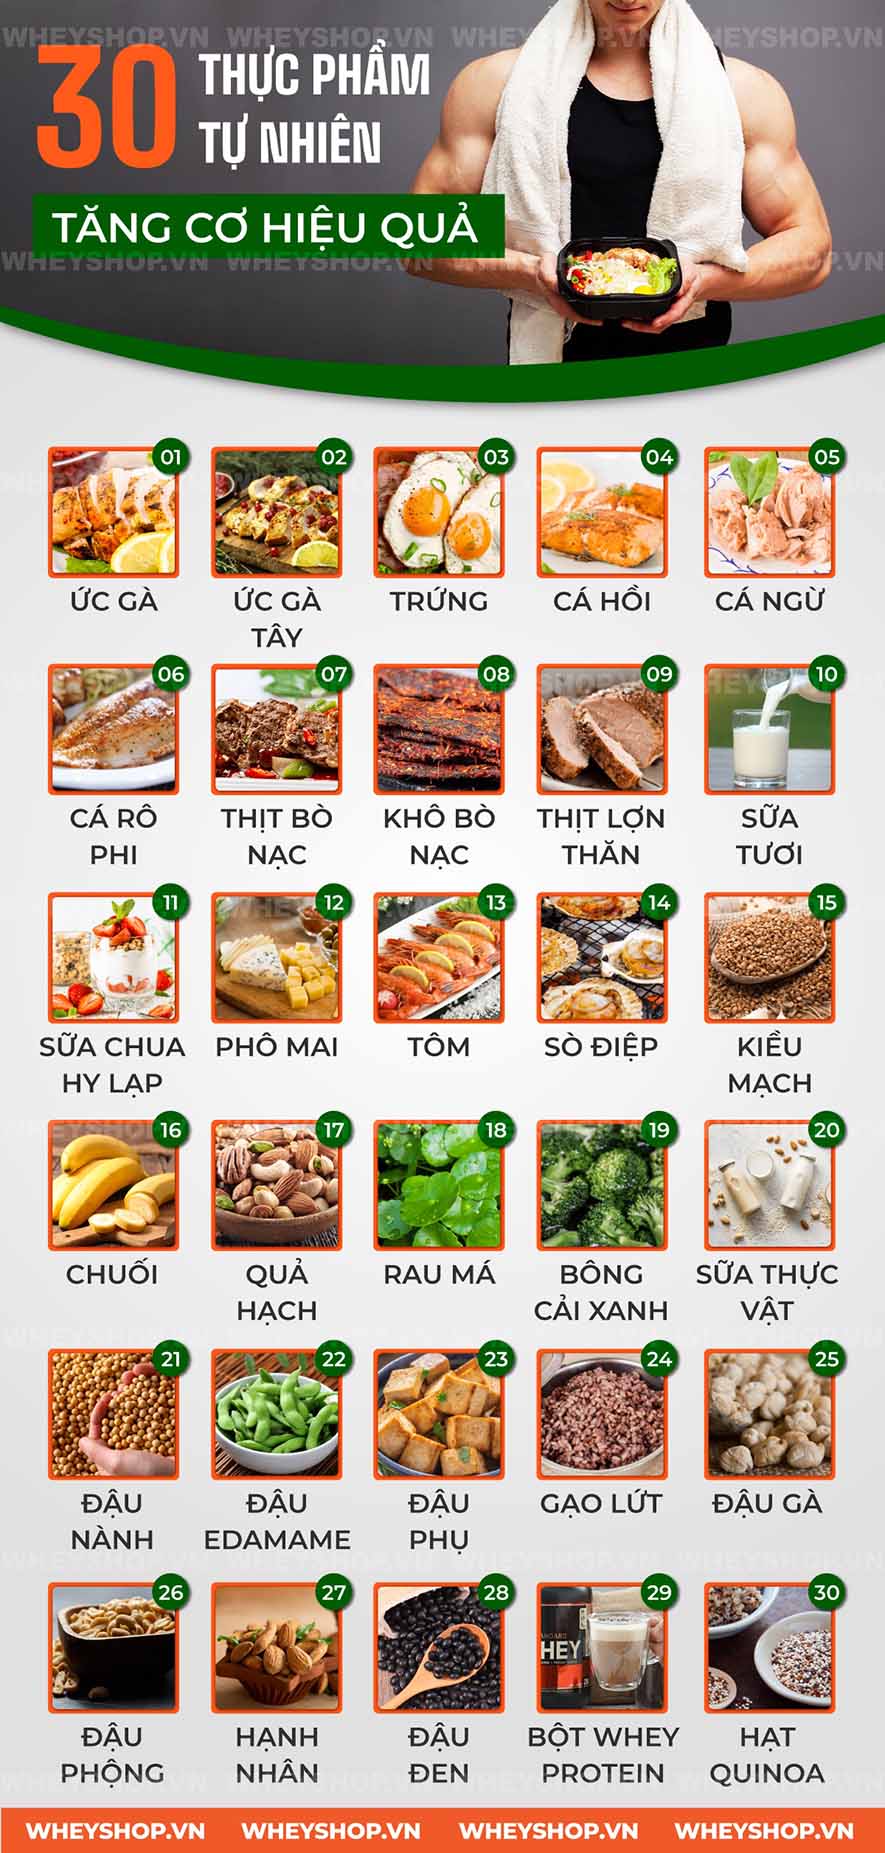 Người tập thể hình nào cũng mong muốn tăng cơ, vậy muốn tăng cơ nên ăn gì? Cùng WheyShop tìm hiểu top 30 thực phẩm tự nhiên tăng cơ hiệu quả nhất qua bài viết..